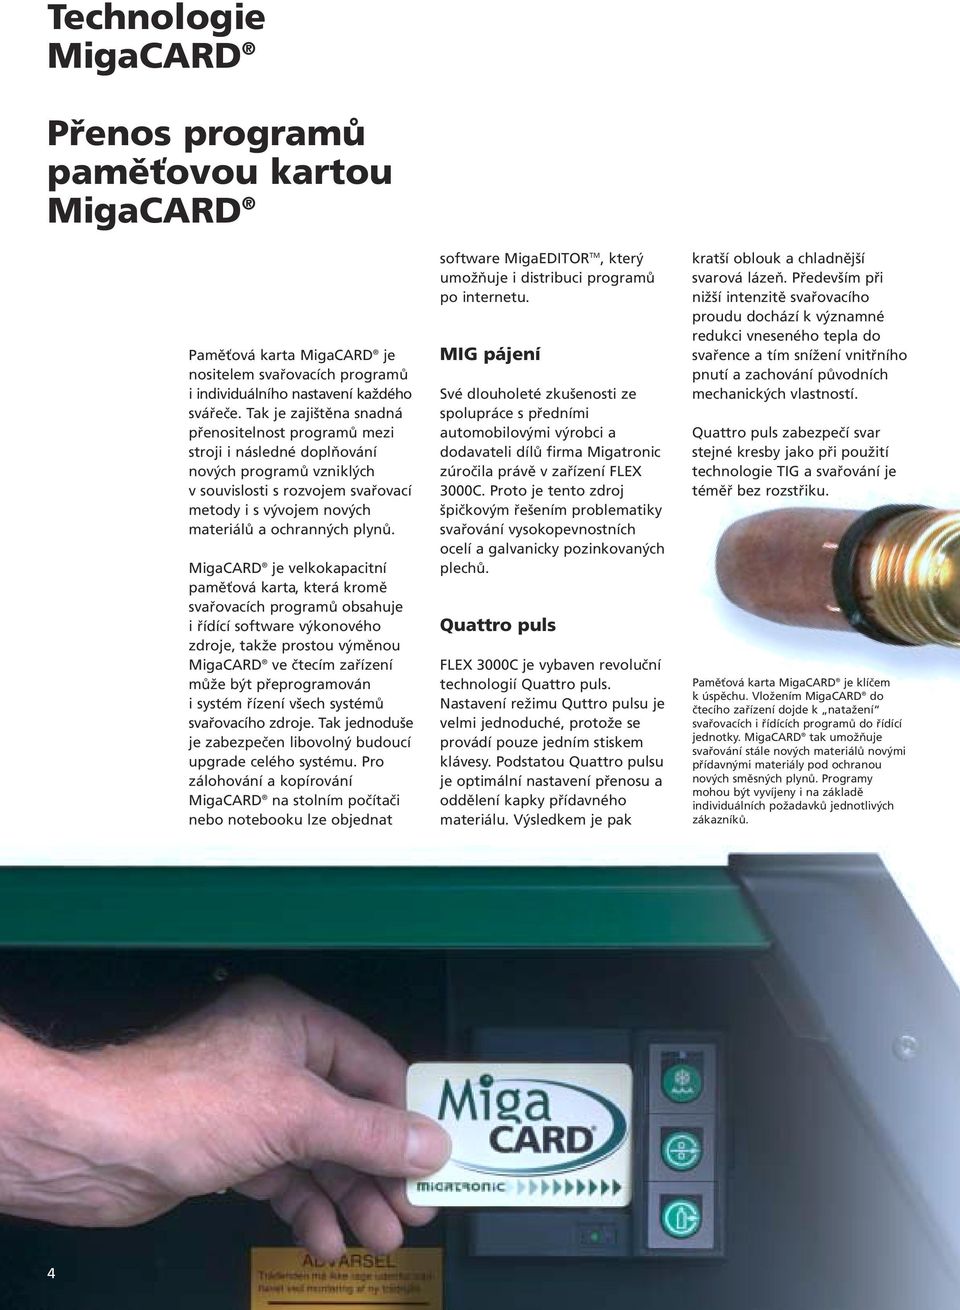 MigaCARD je velkokapacitní paměťová karta, která kromě svařovacích programů obsahuje i řídící software výkonového zdroje, takže prostou výměnou MigaCARD ve čtecím zařízení může být přeprogramován i